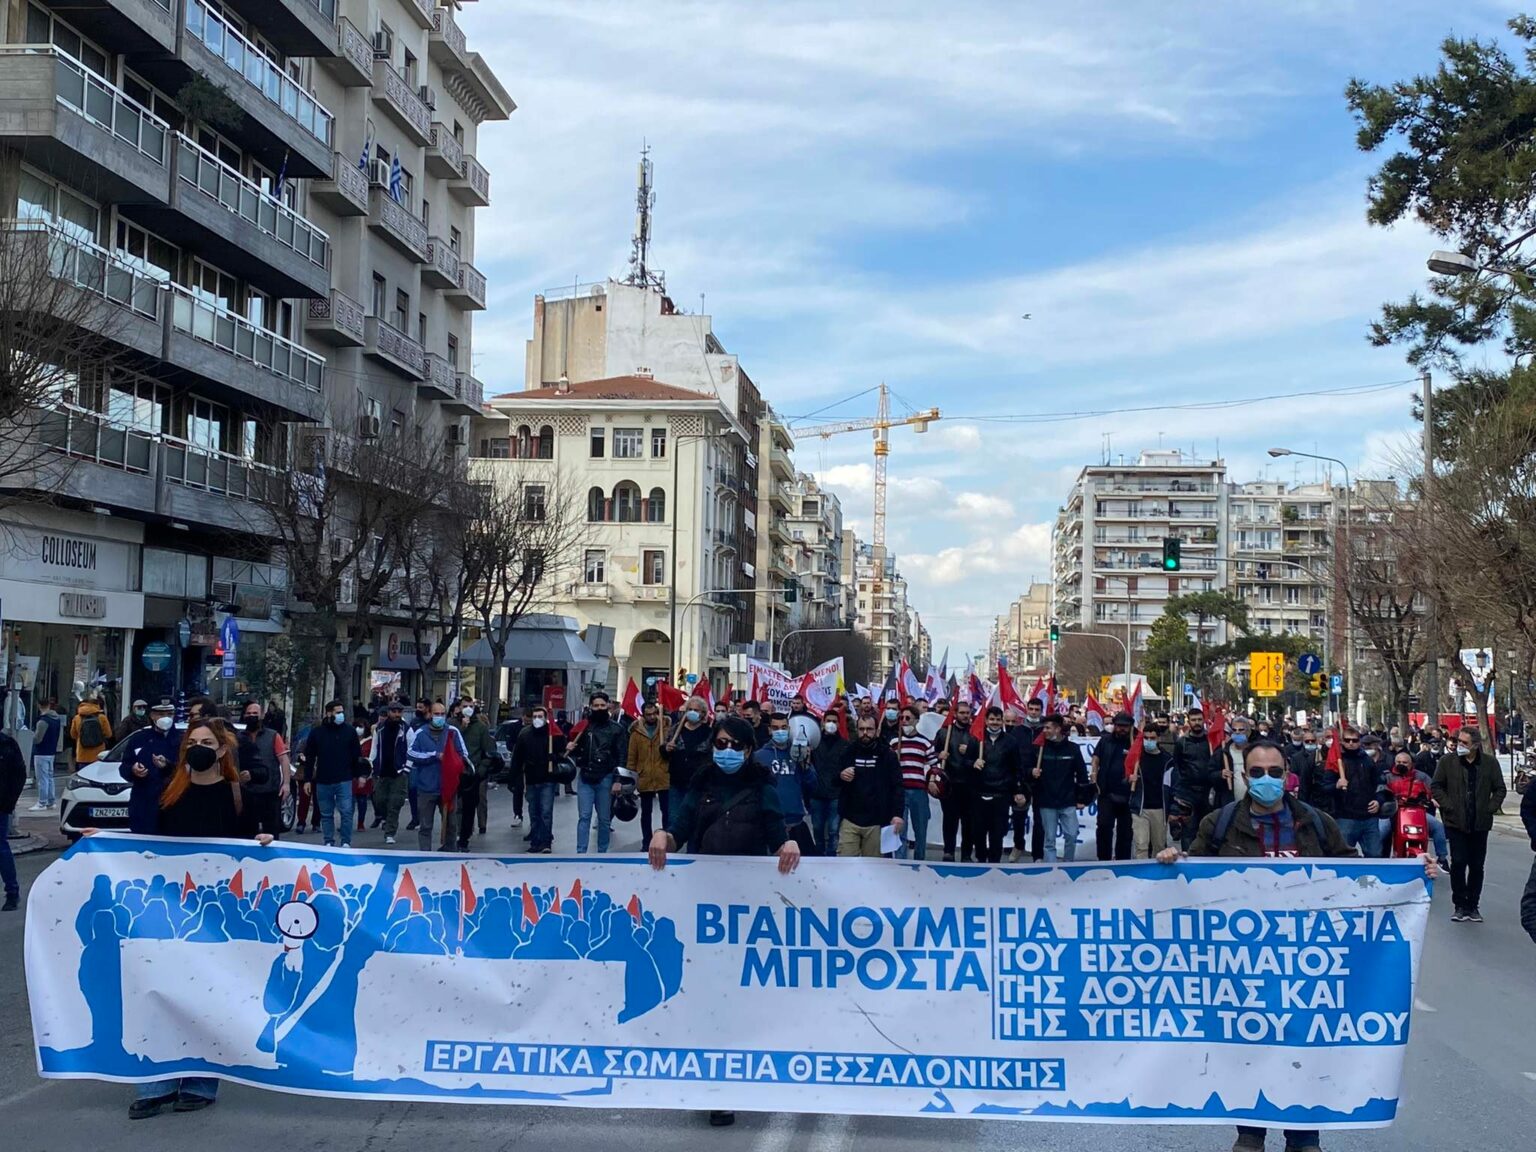 Θεσσαλονίκη: Πορεία κατά της ακρίβειας από μέλη εργατικών σωματείων